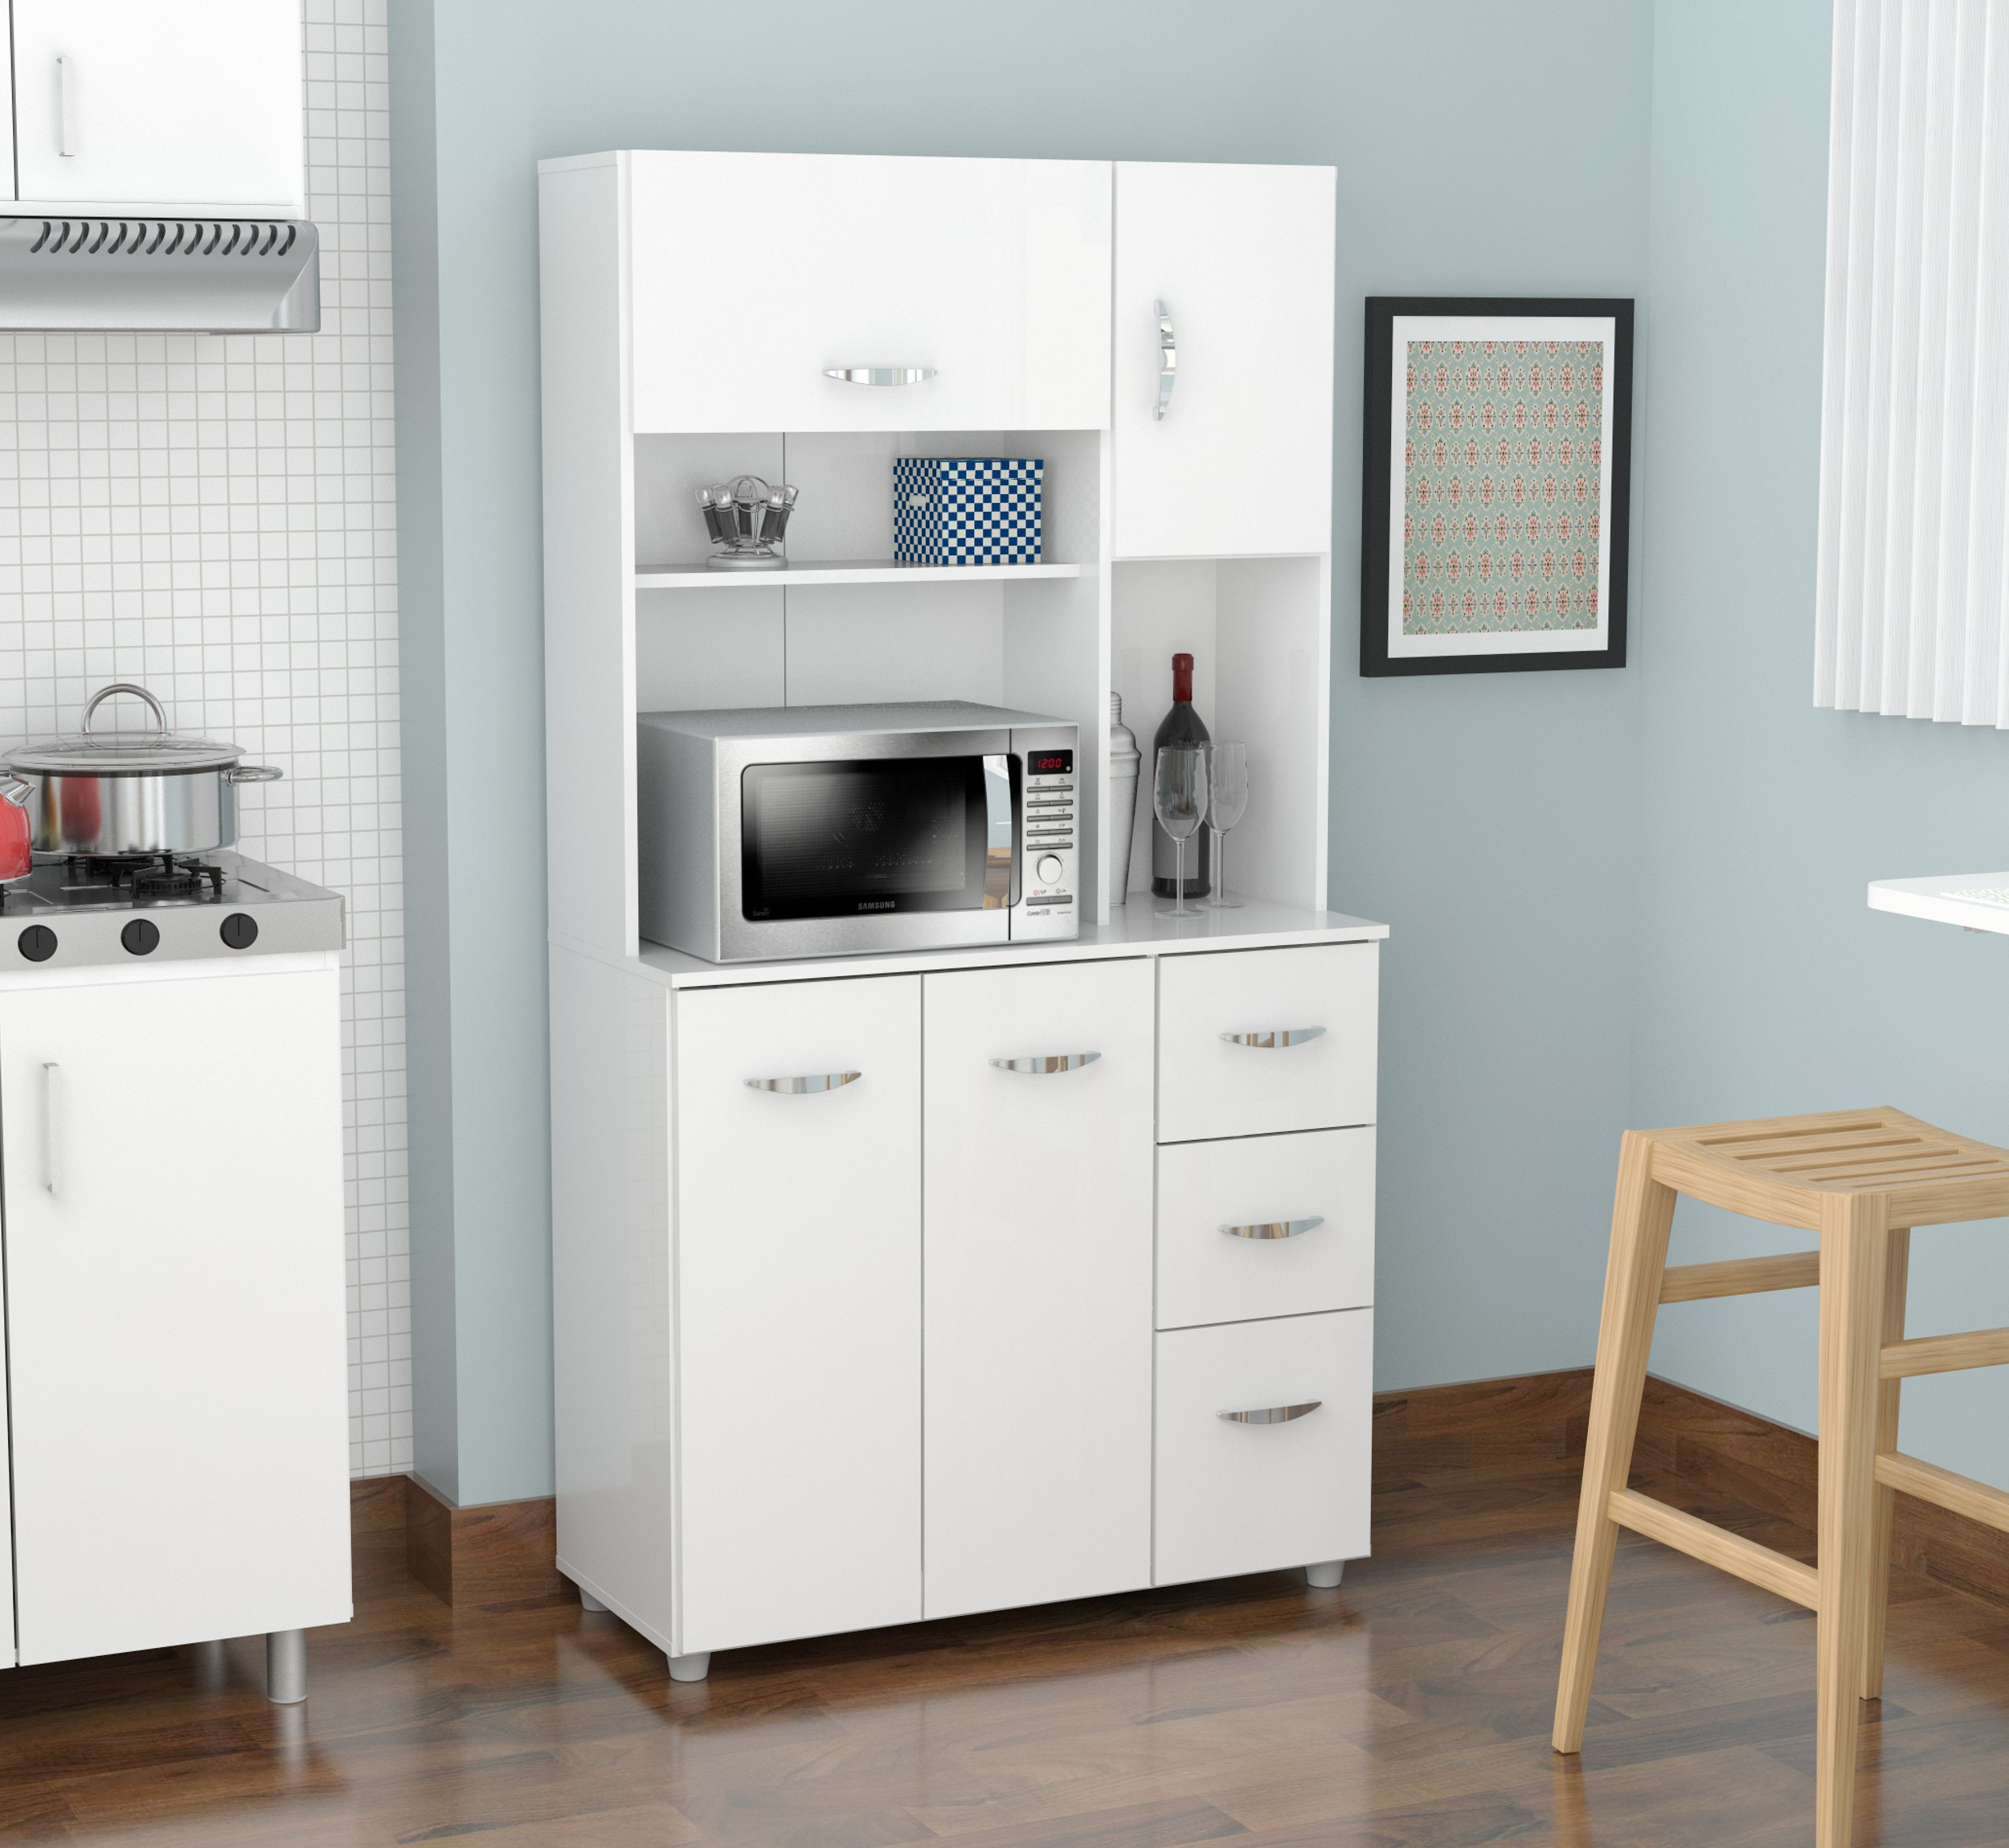 Kitchen Storage Units
 Inval 4 door Laminate Microwave Kitchen Cabinet Laricina